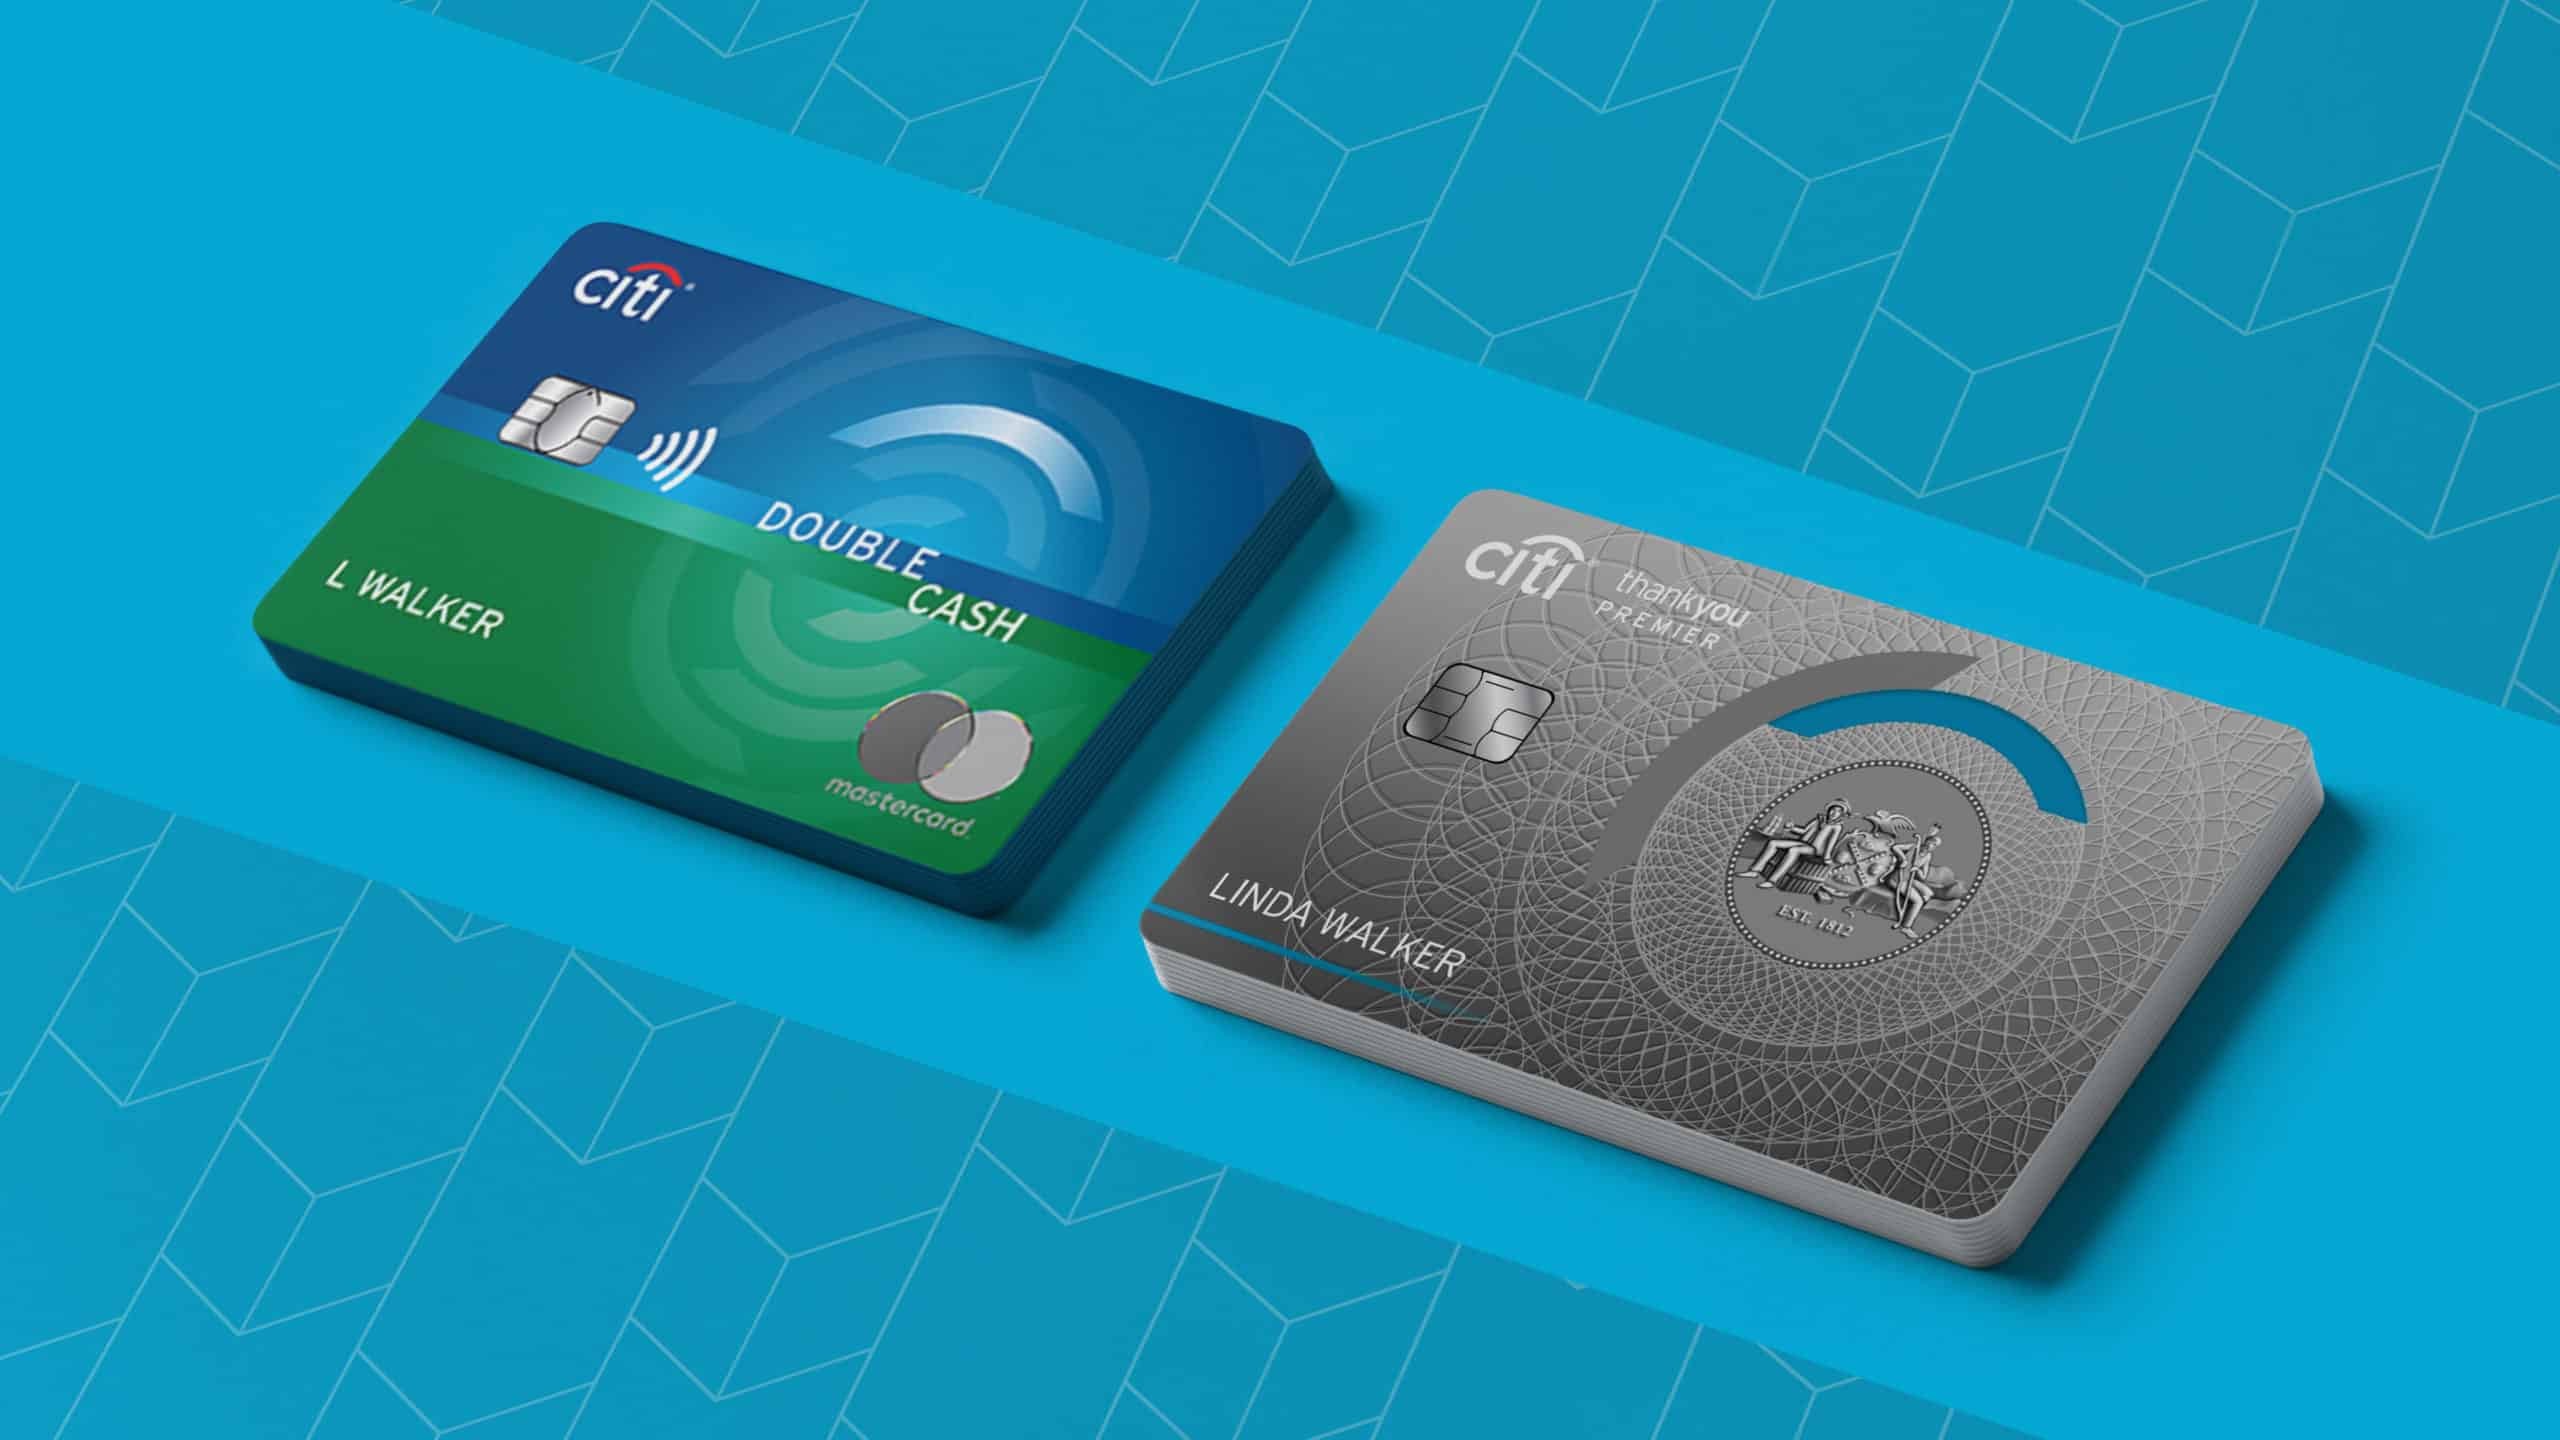 Thẻ Citi Double Cash cung cấp nhiều ưu đãi và đặc quyền cho chủ sở hữu